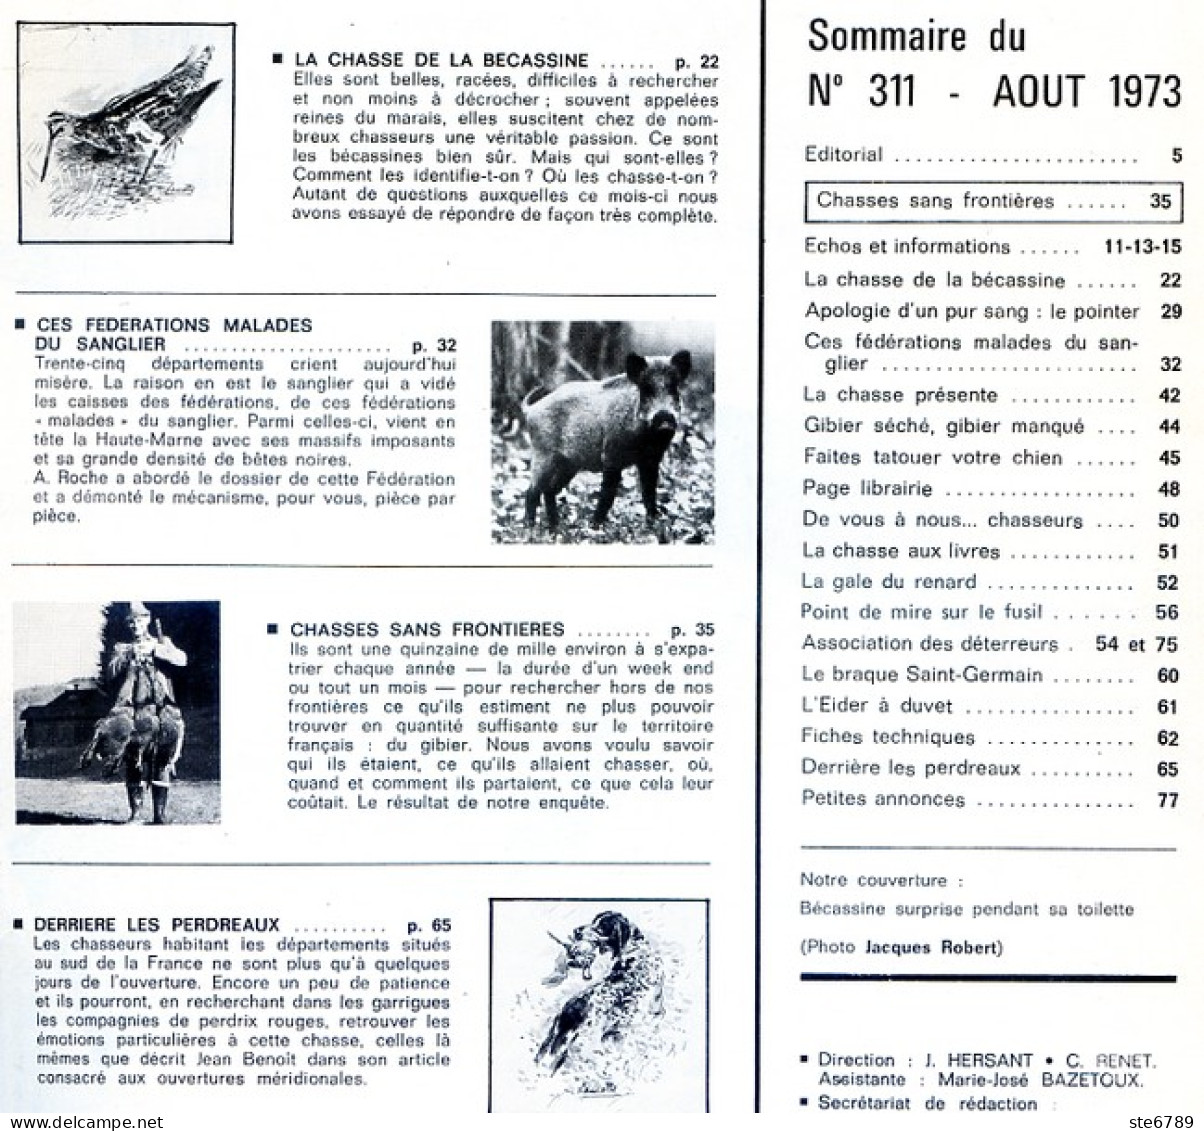 La Revue Nationale De LA CHASSE N° 311 Aout 1973 Chasse De La Bécassine , - Hunting & Fishing